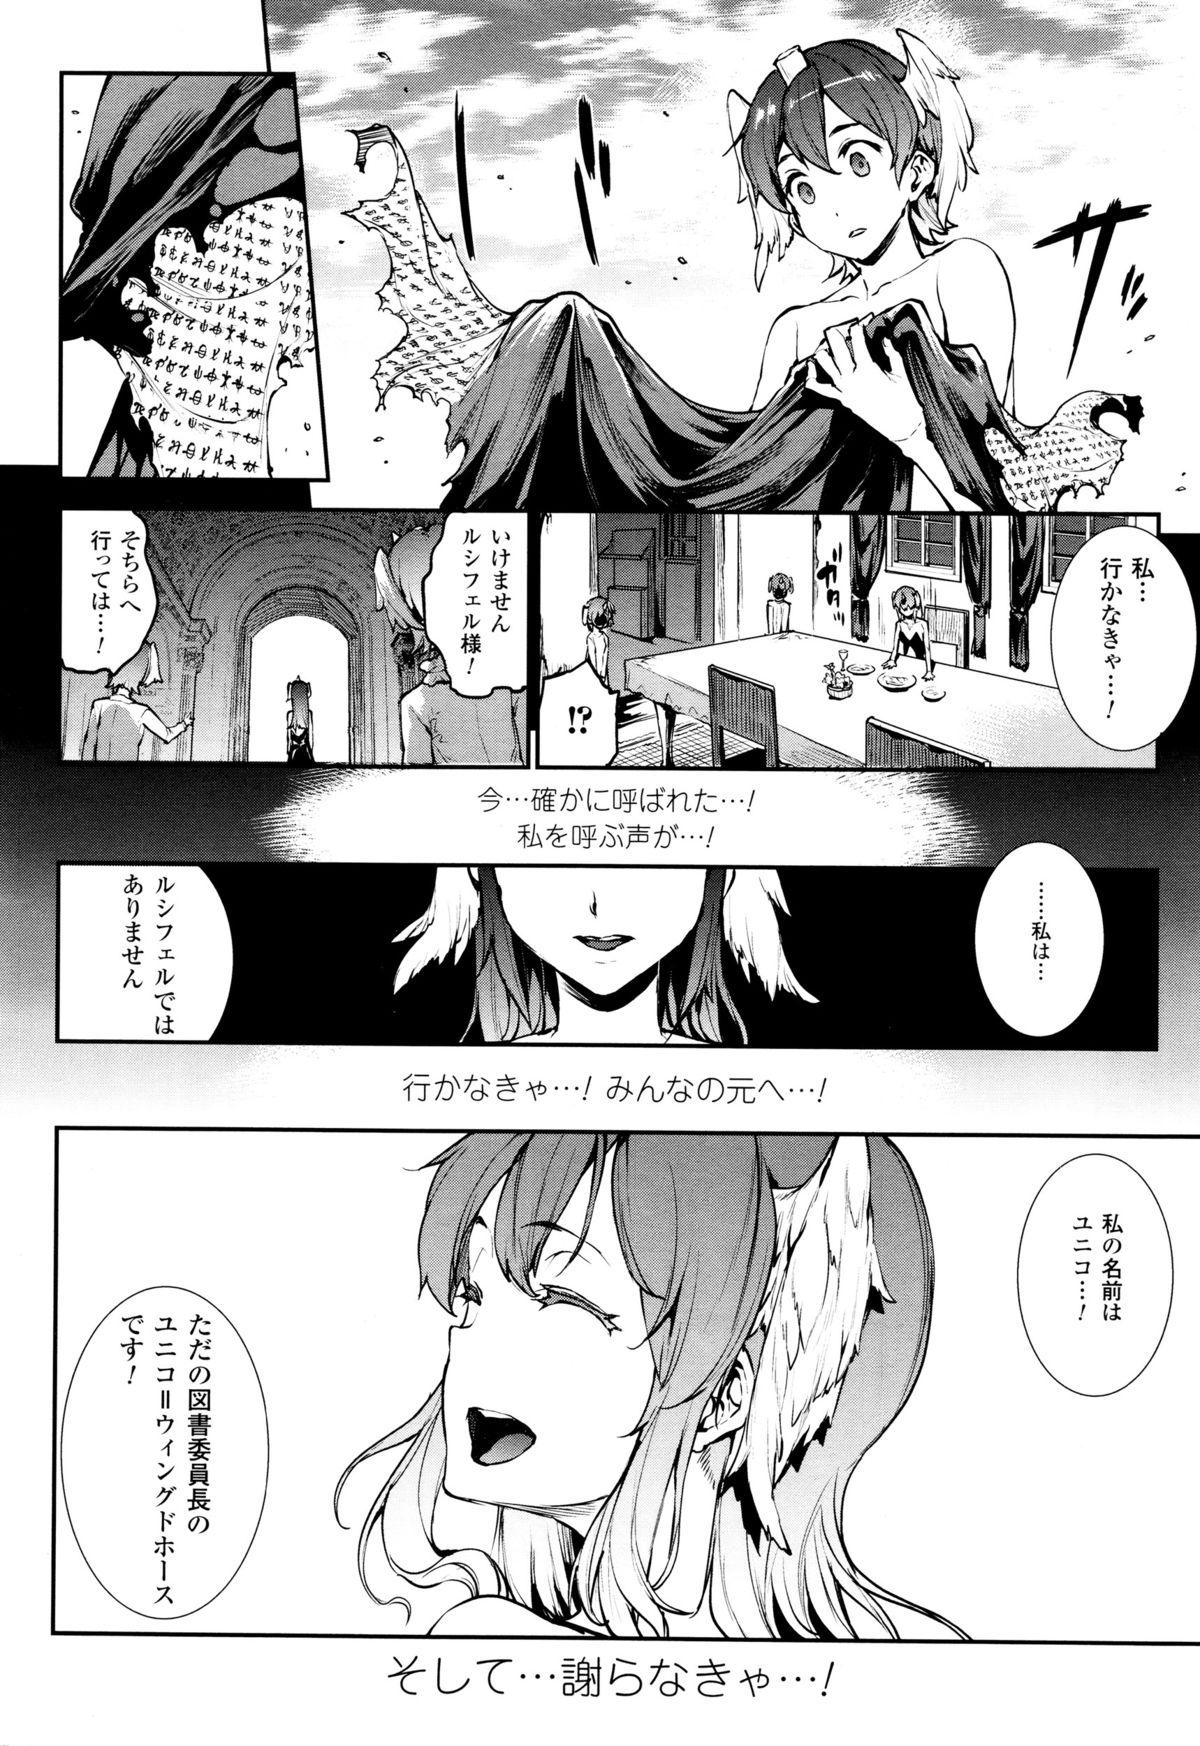 [Erect Sawaru] Shinkyoku no Grimoire -PANDRA saga 2nd story- CH 13-20 182